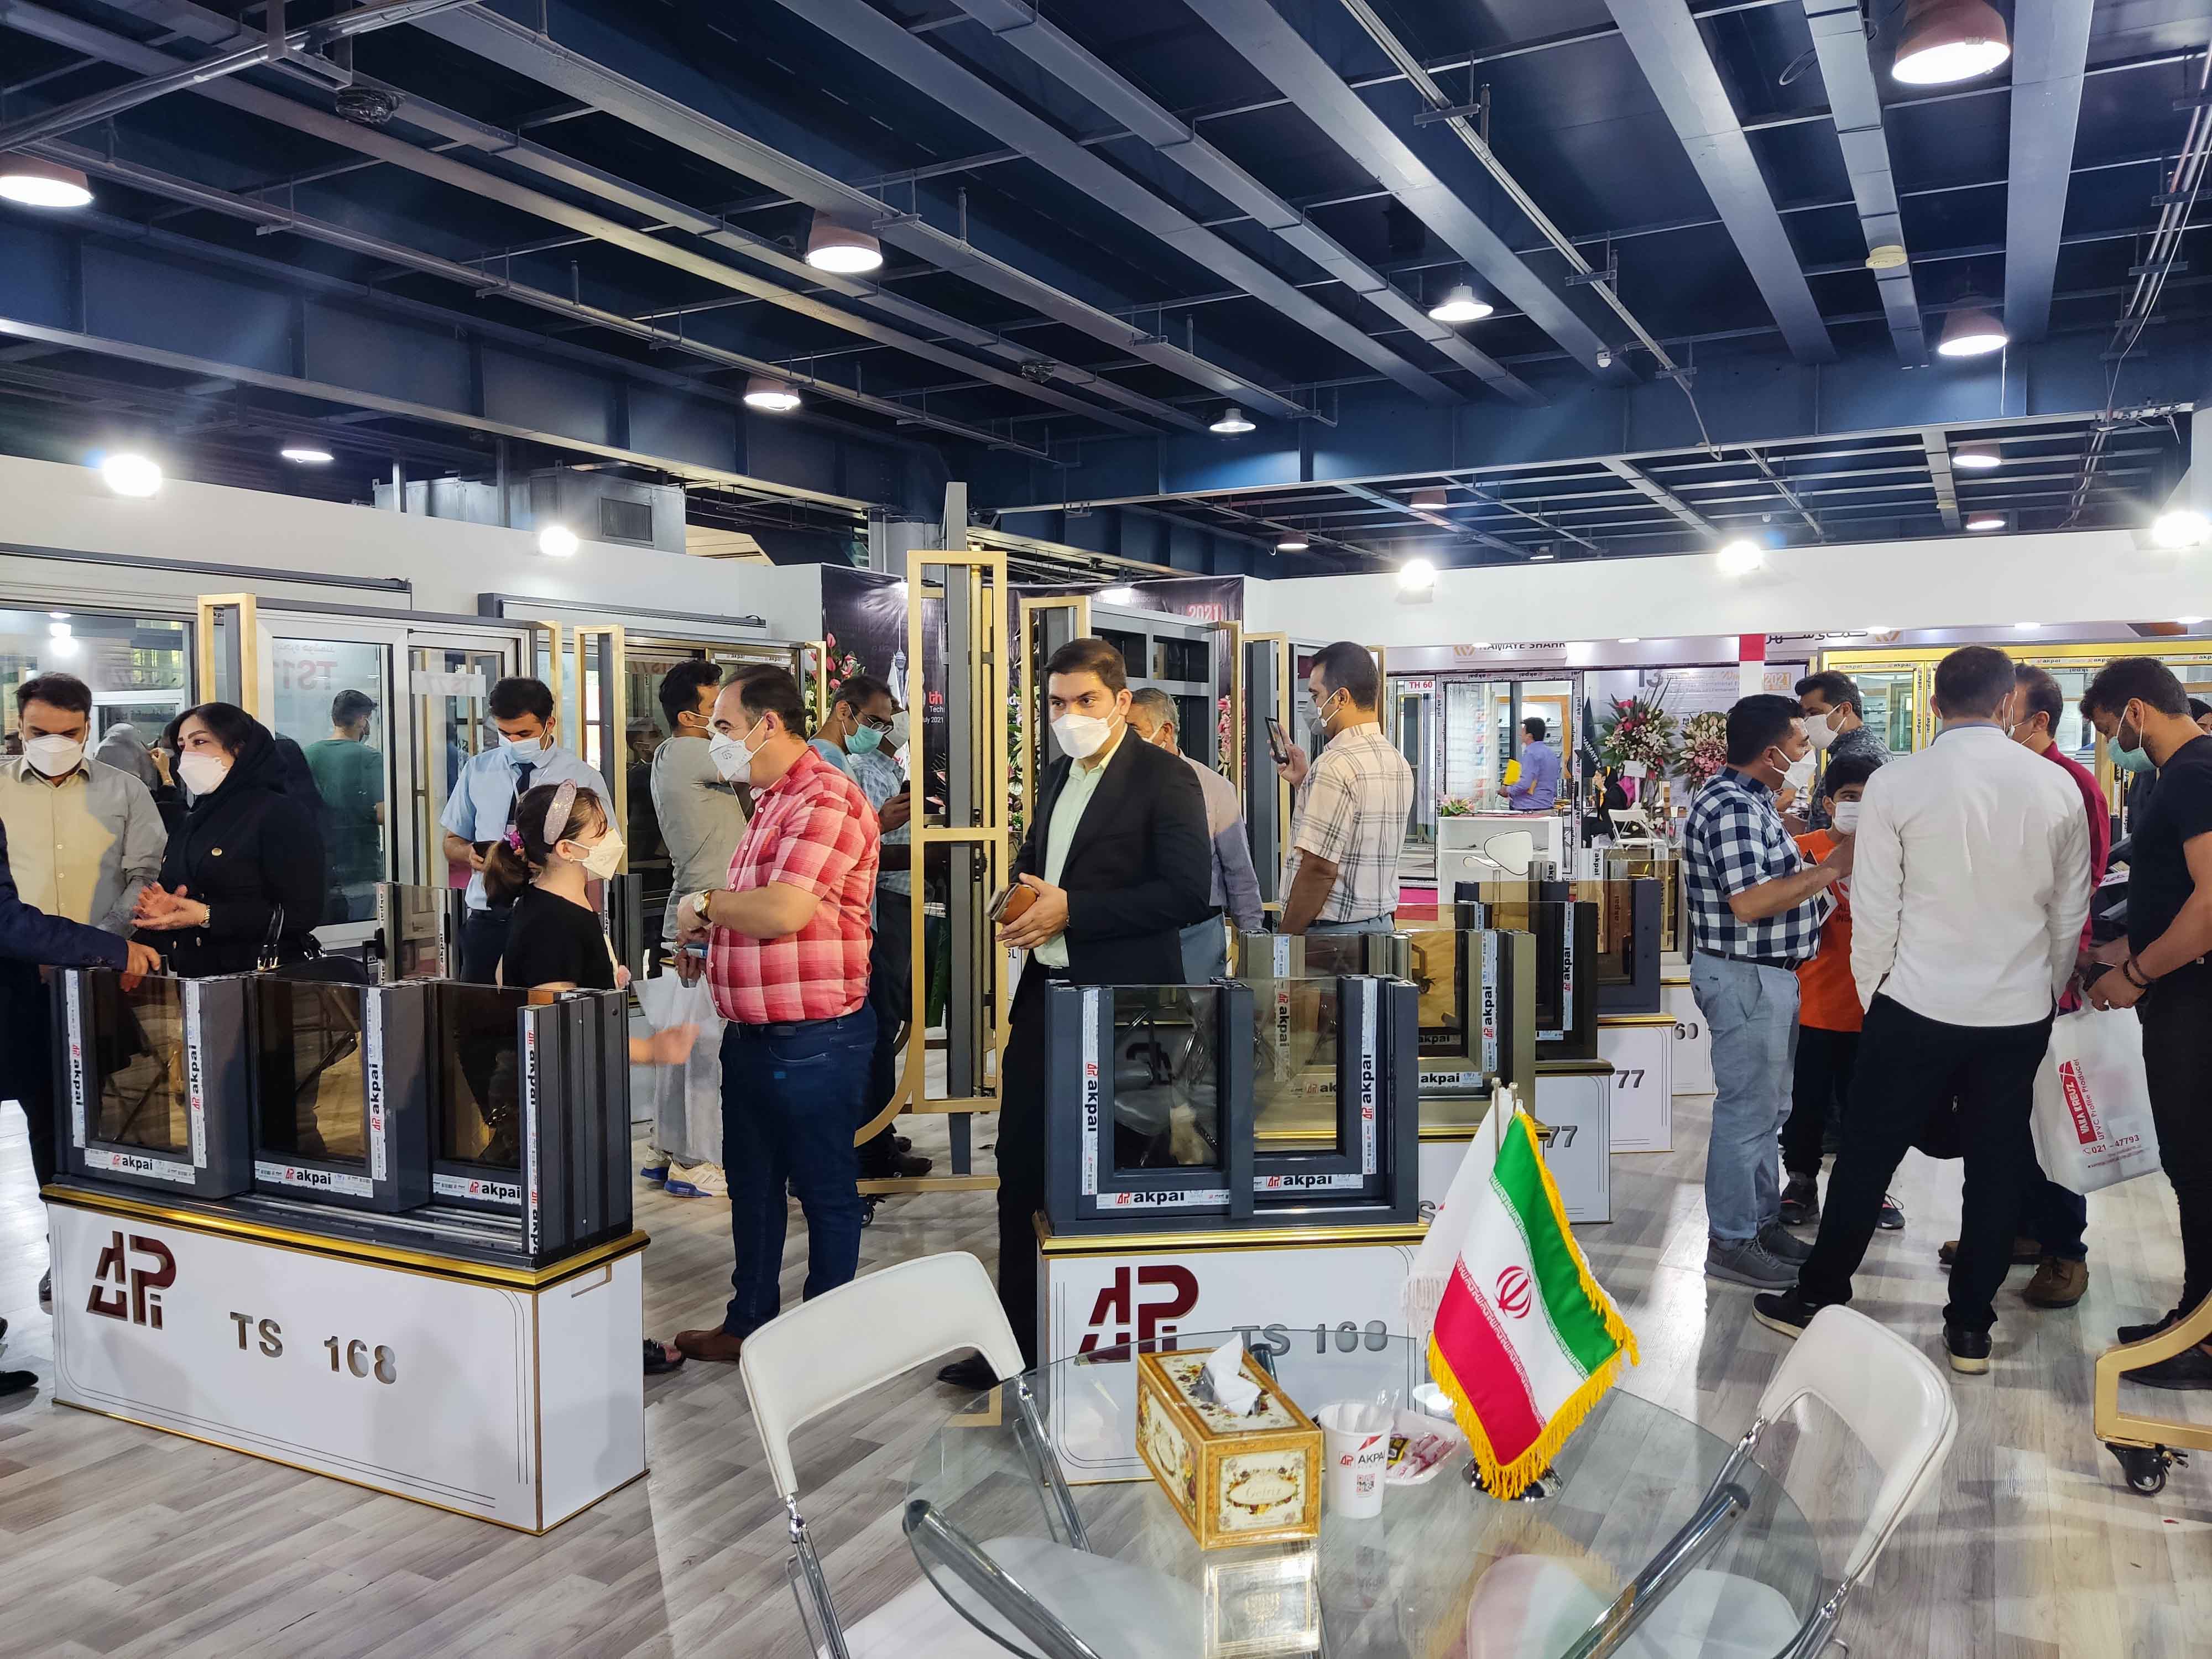 انتخاب غرفه شرکت آکپا ایران به عنوان پربازدیدترین غرفه سیزدهمین نمایشگاه در و پنجره تهران